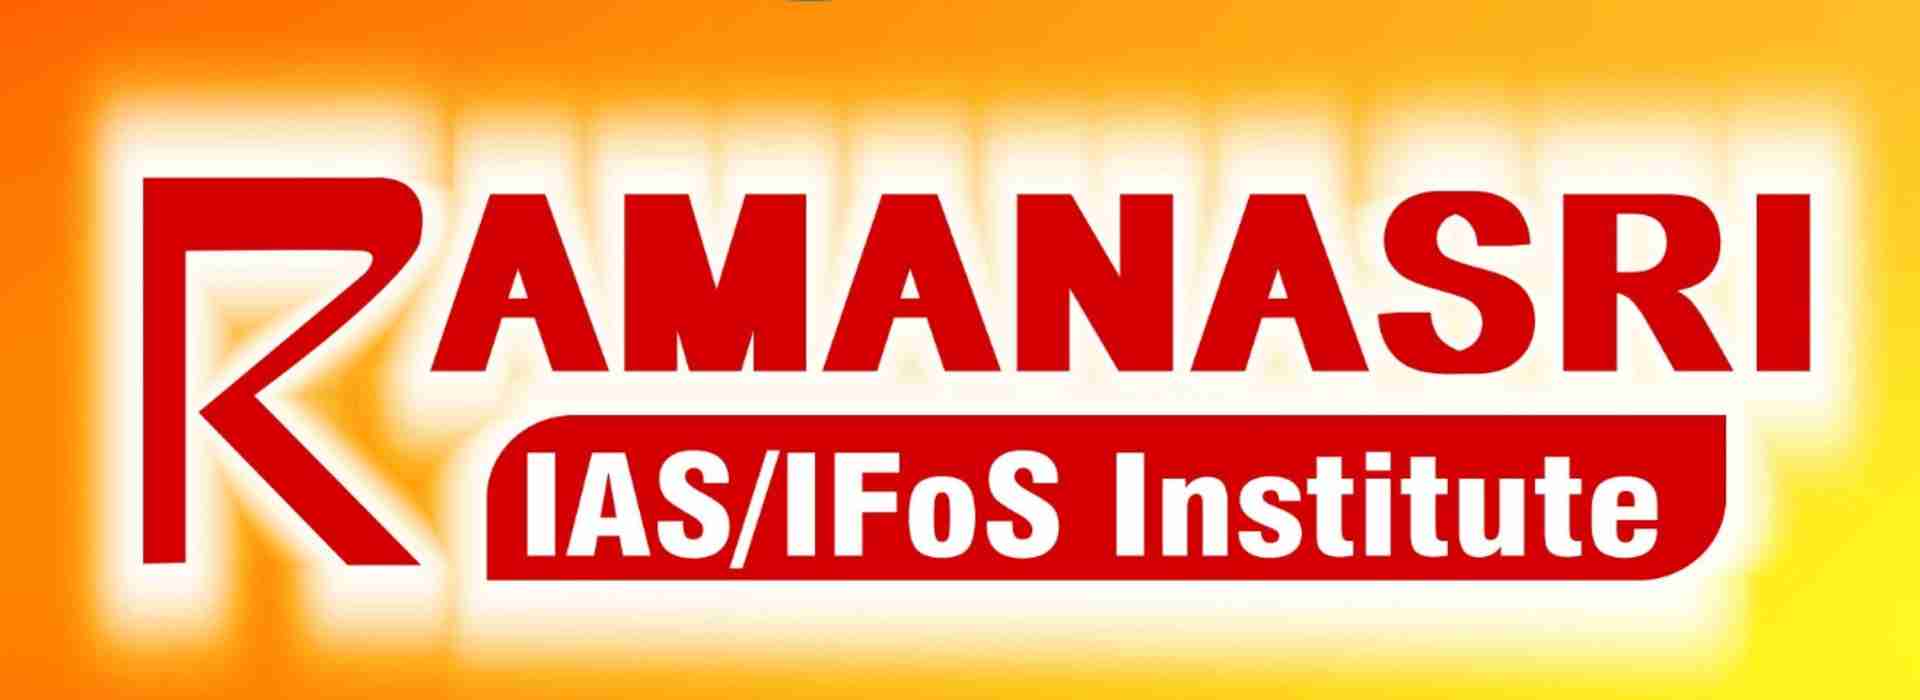 Ramanasri-IAS-IFoS-INSTITUTE